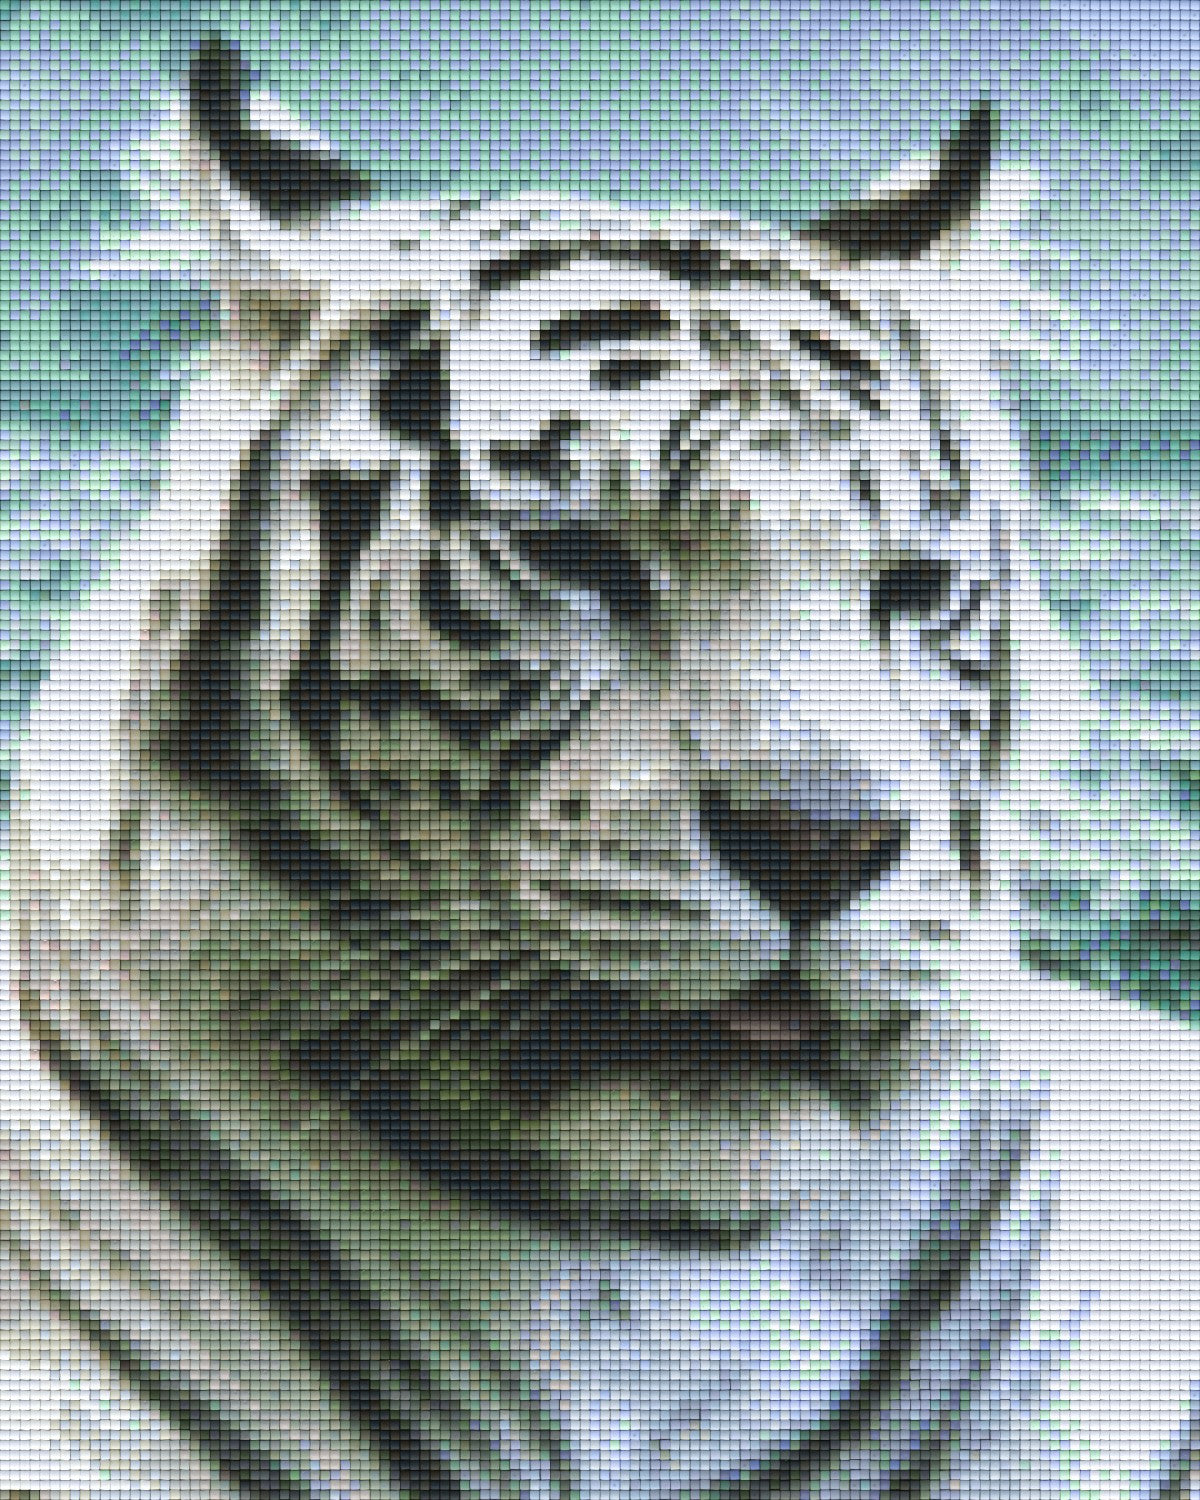 Pixelhobby Klassik Vorlage - Weißer Tiger 3